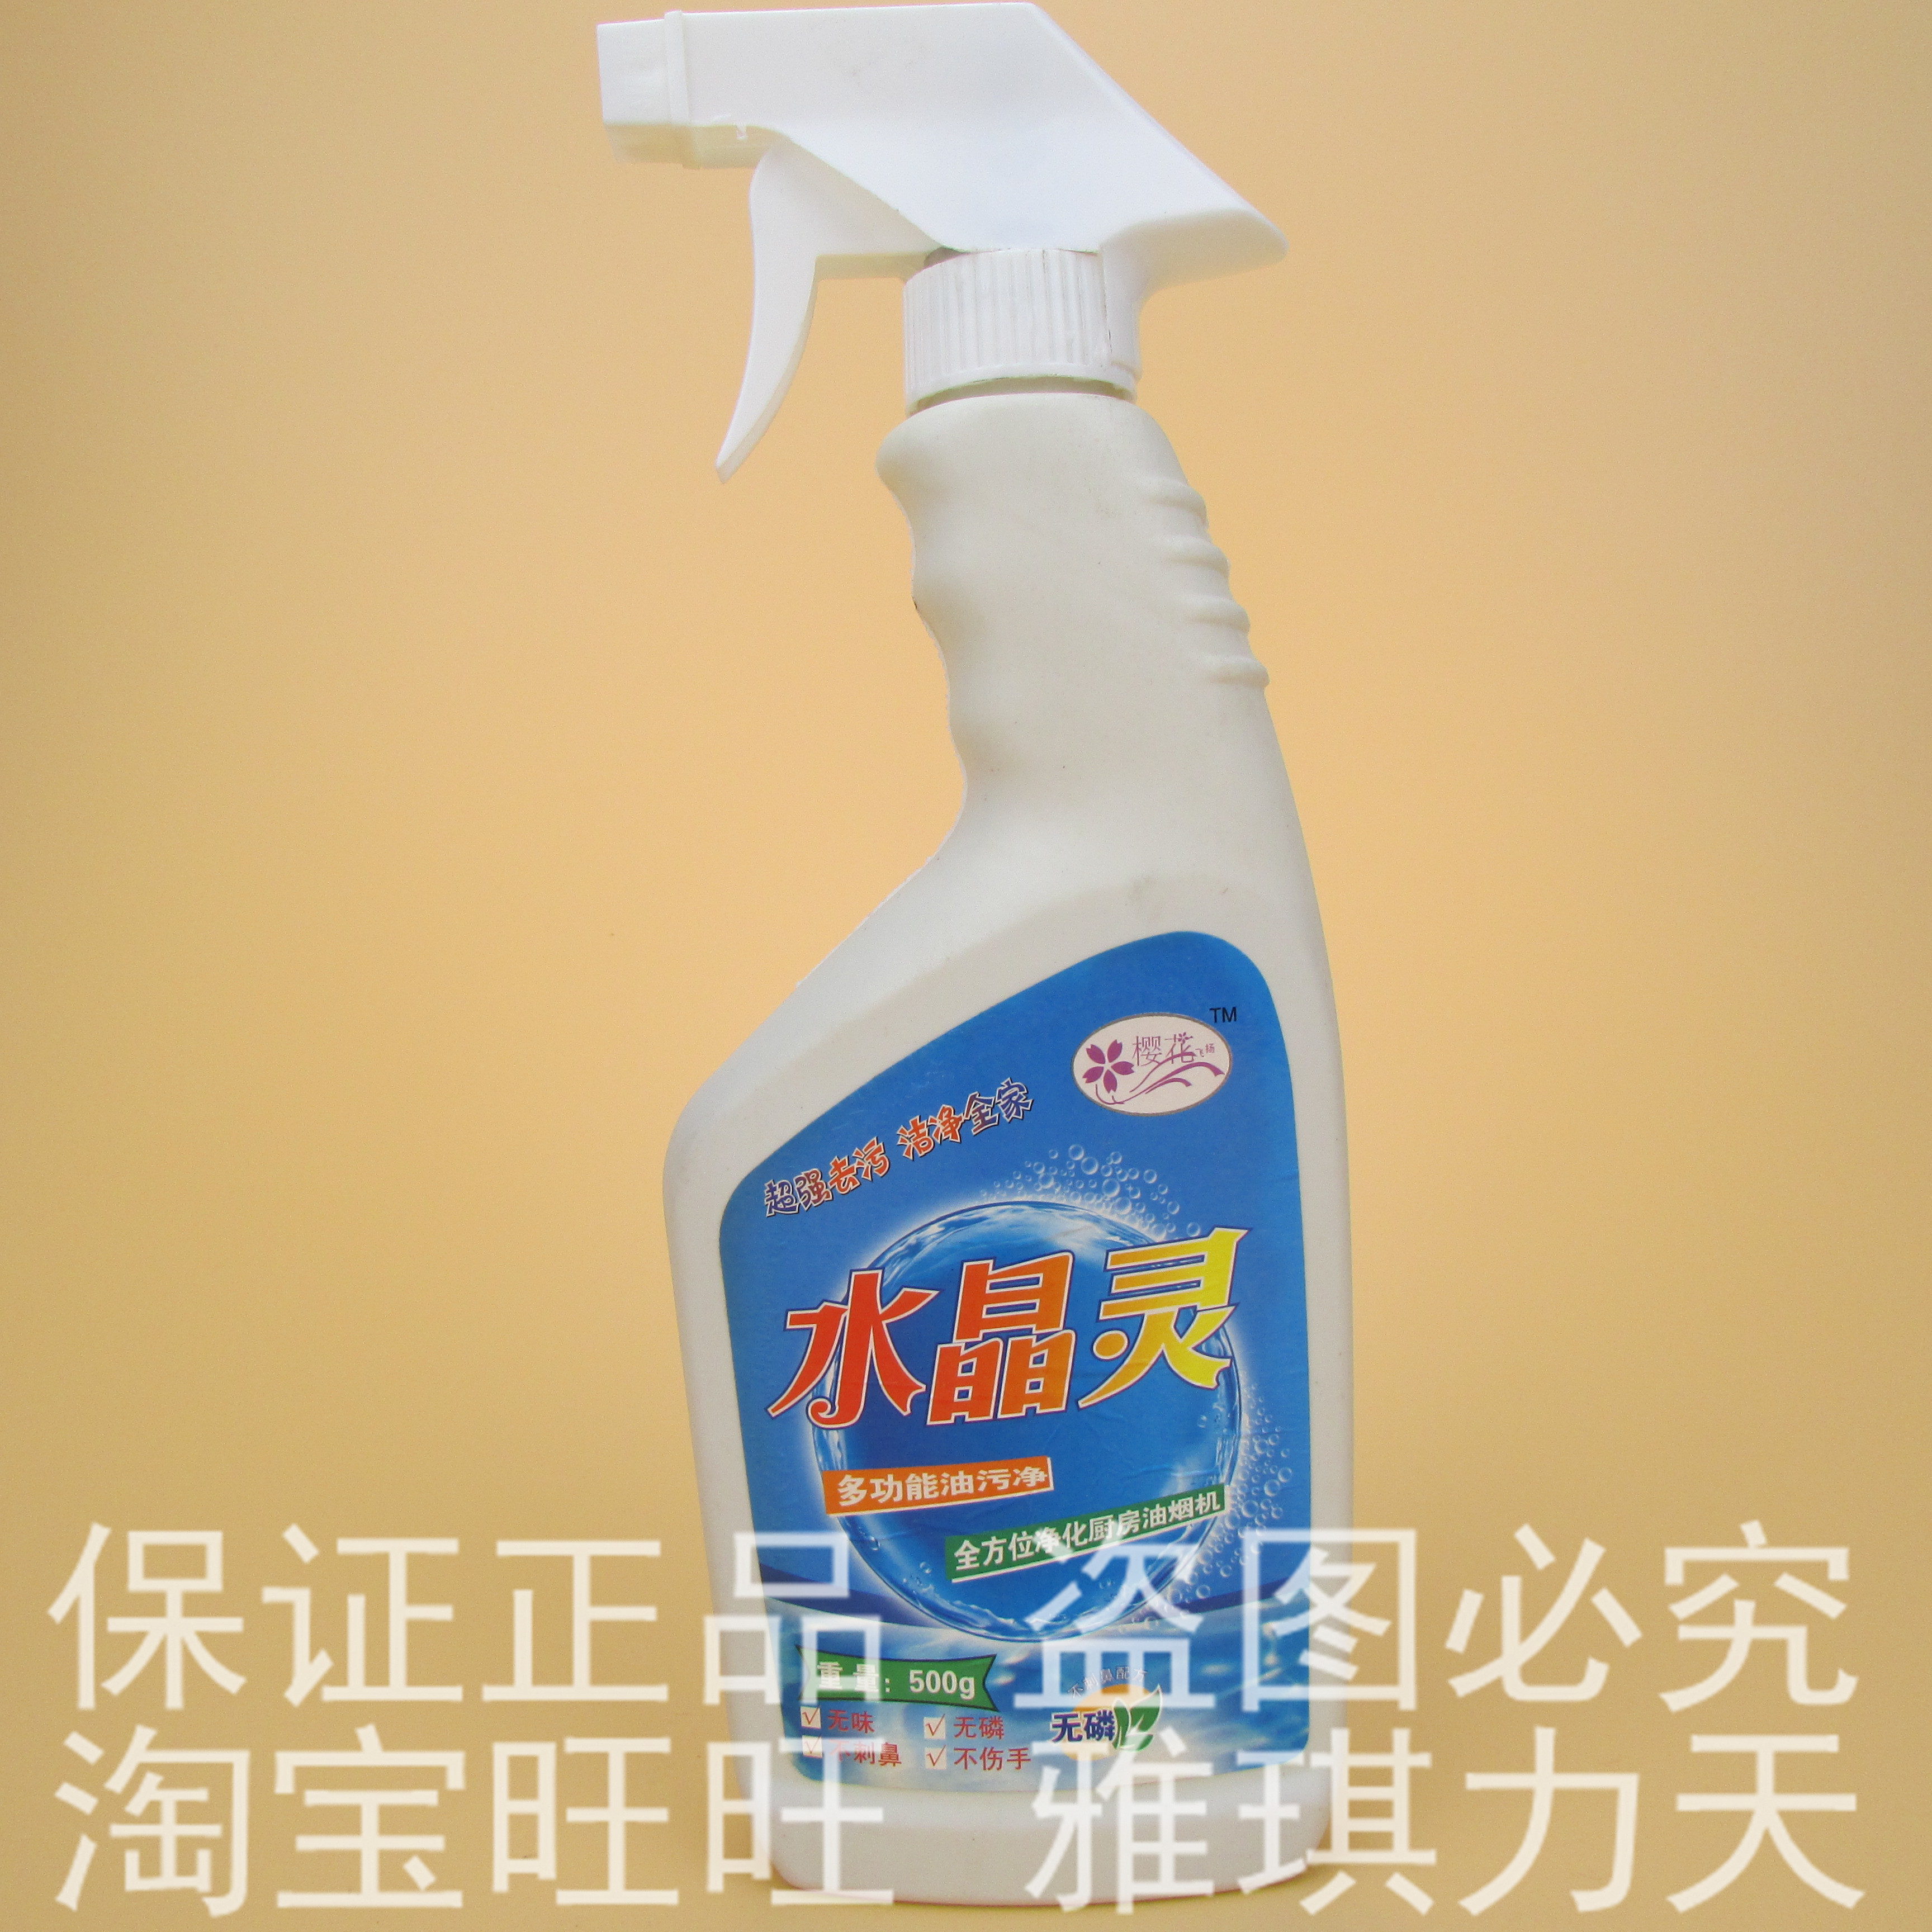 【官方直销】 水精灵多功能油污净 清洁剂 清洗剂 单瓶装